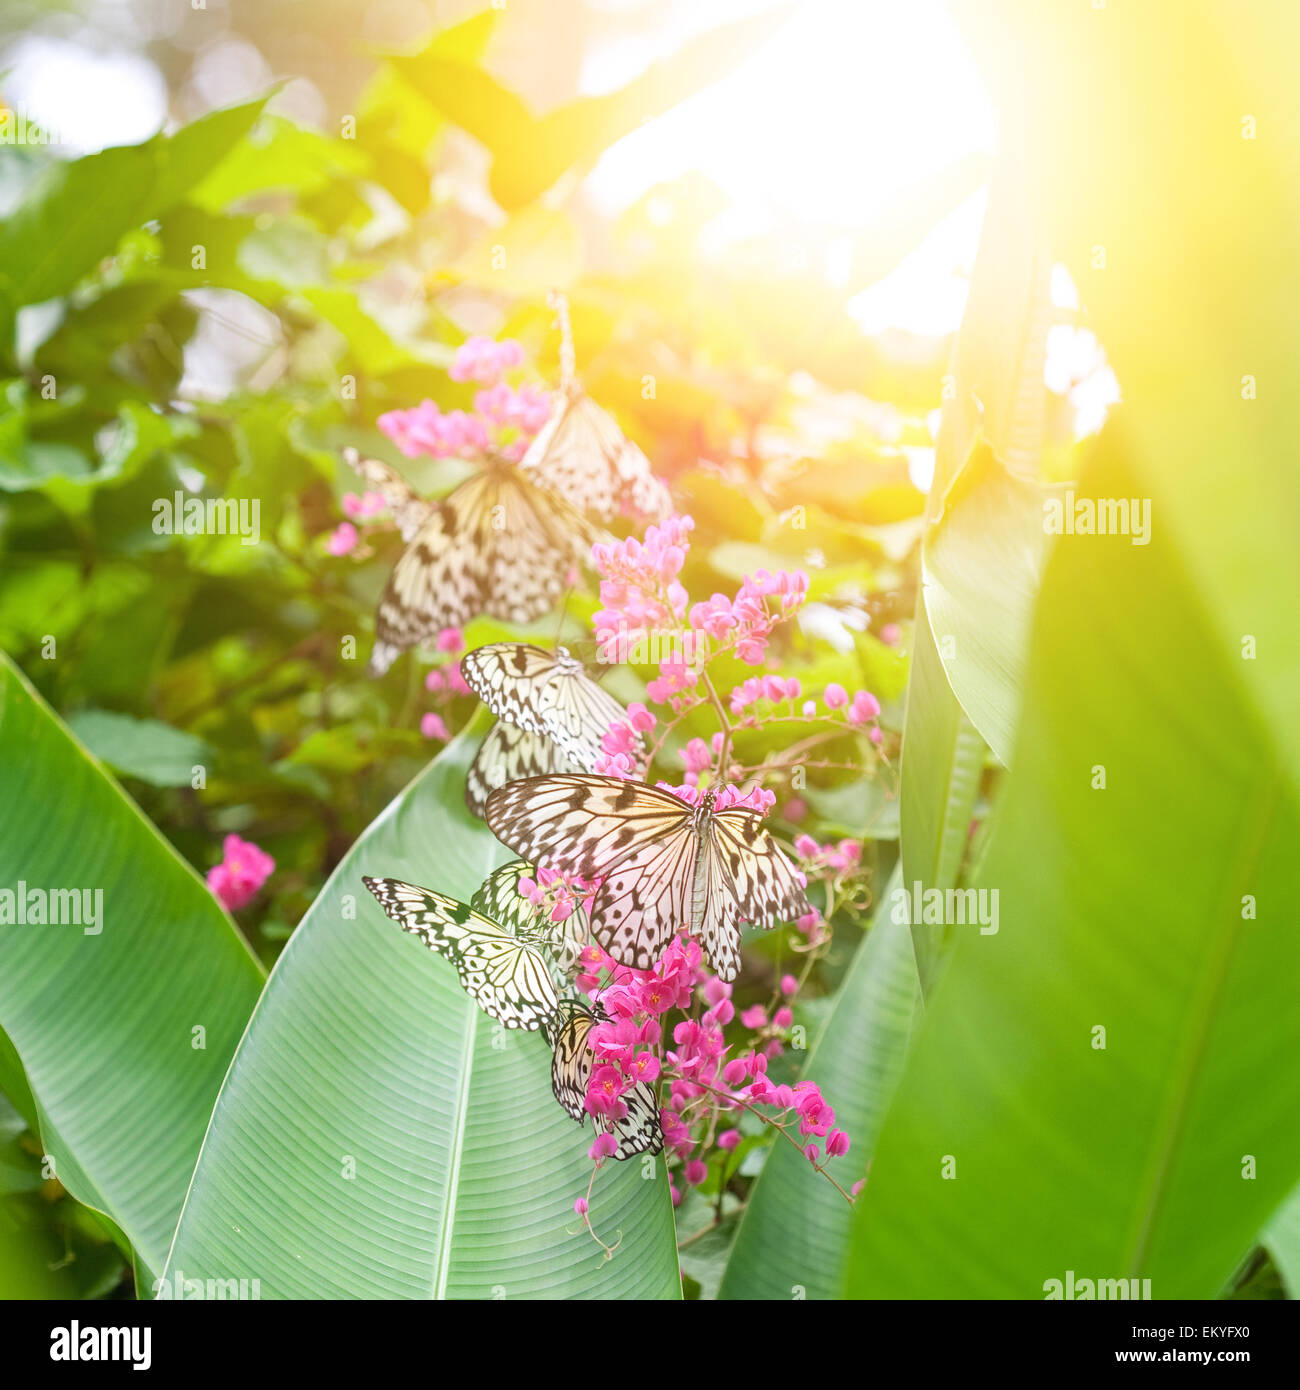 Du beau papier papillons kite (nymphe des arbres) et recueillir le nectar des fleurs roses contre le soleil du soir Banque D'Images